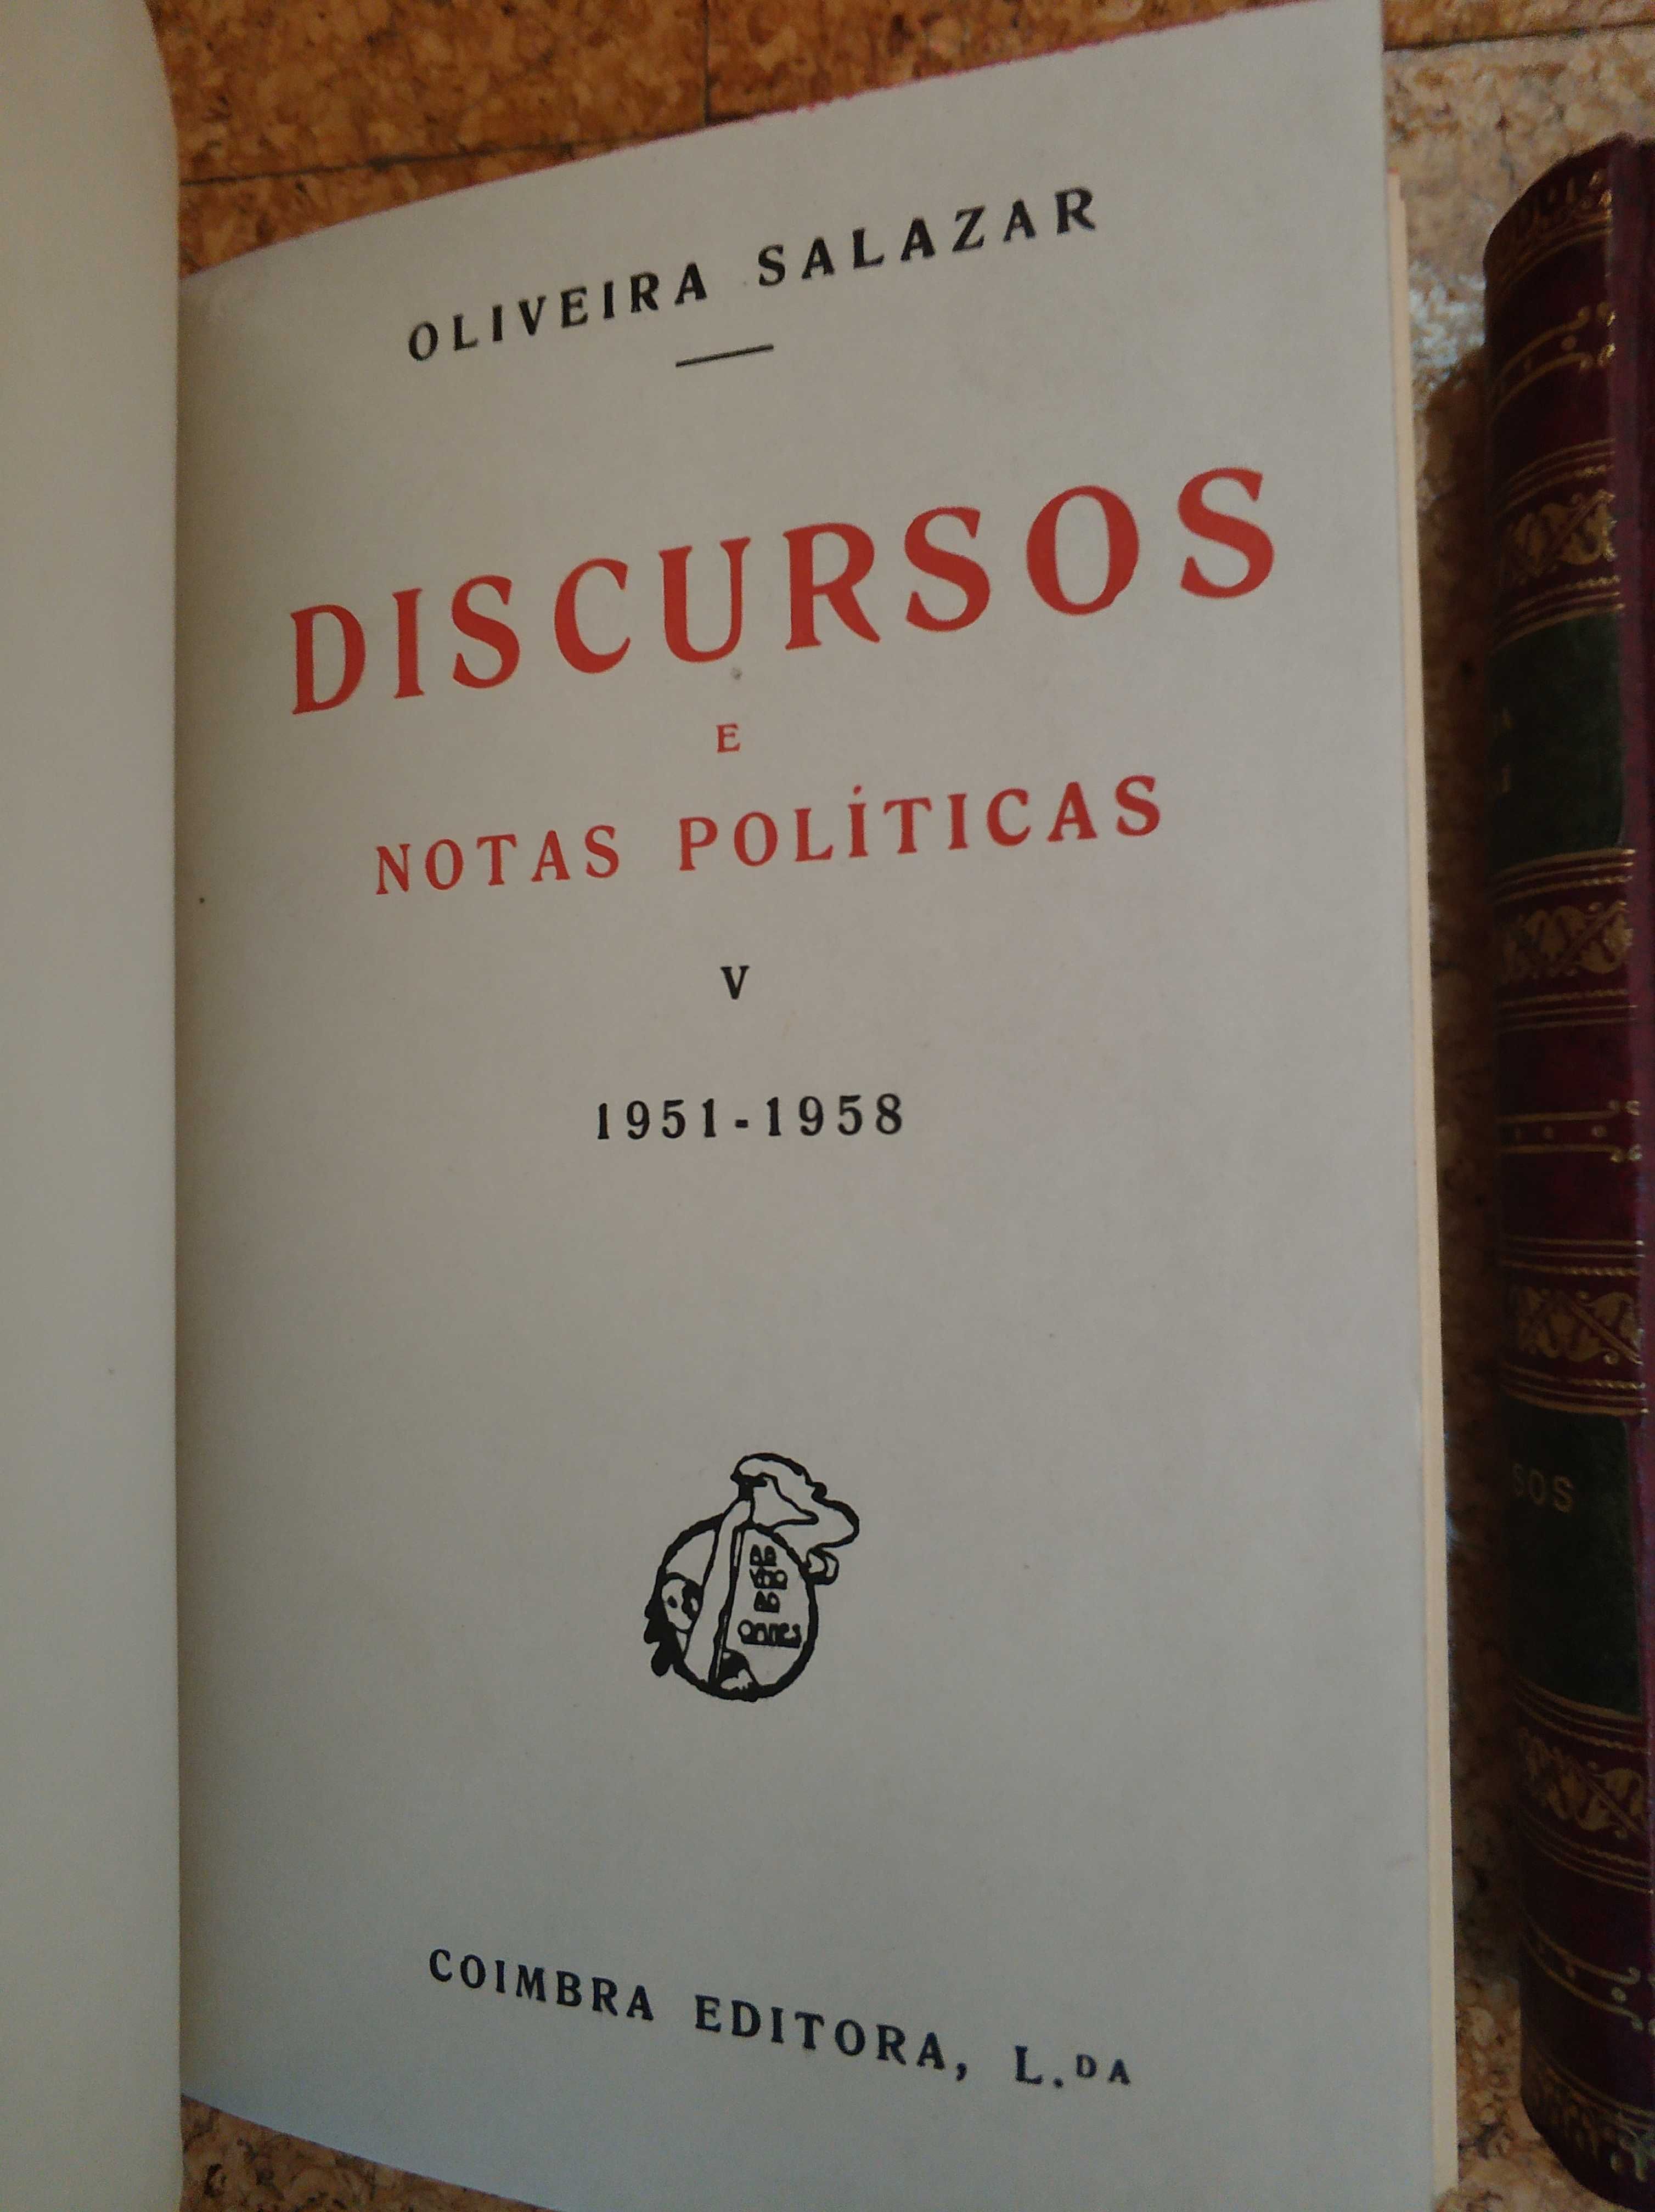 Salazar - Livros Discursos V e VI